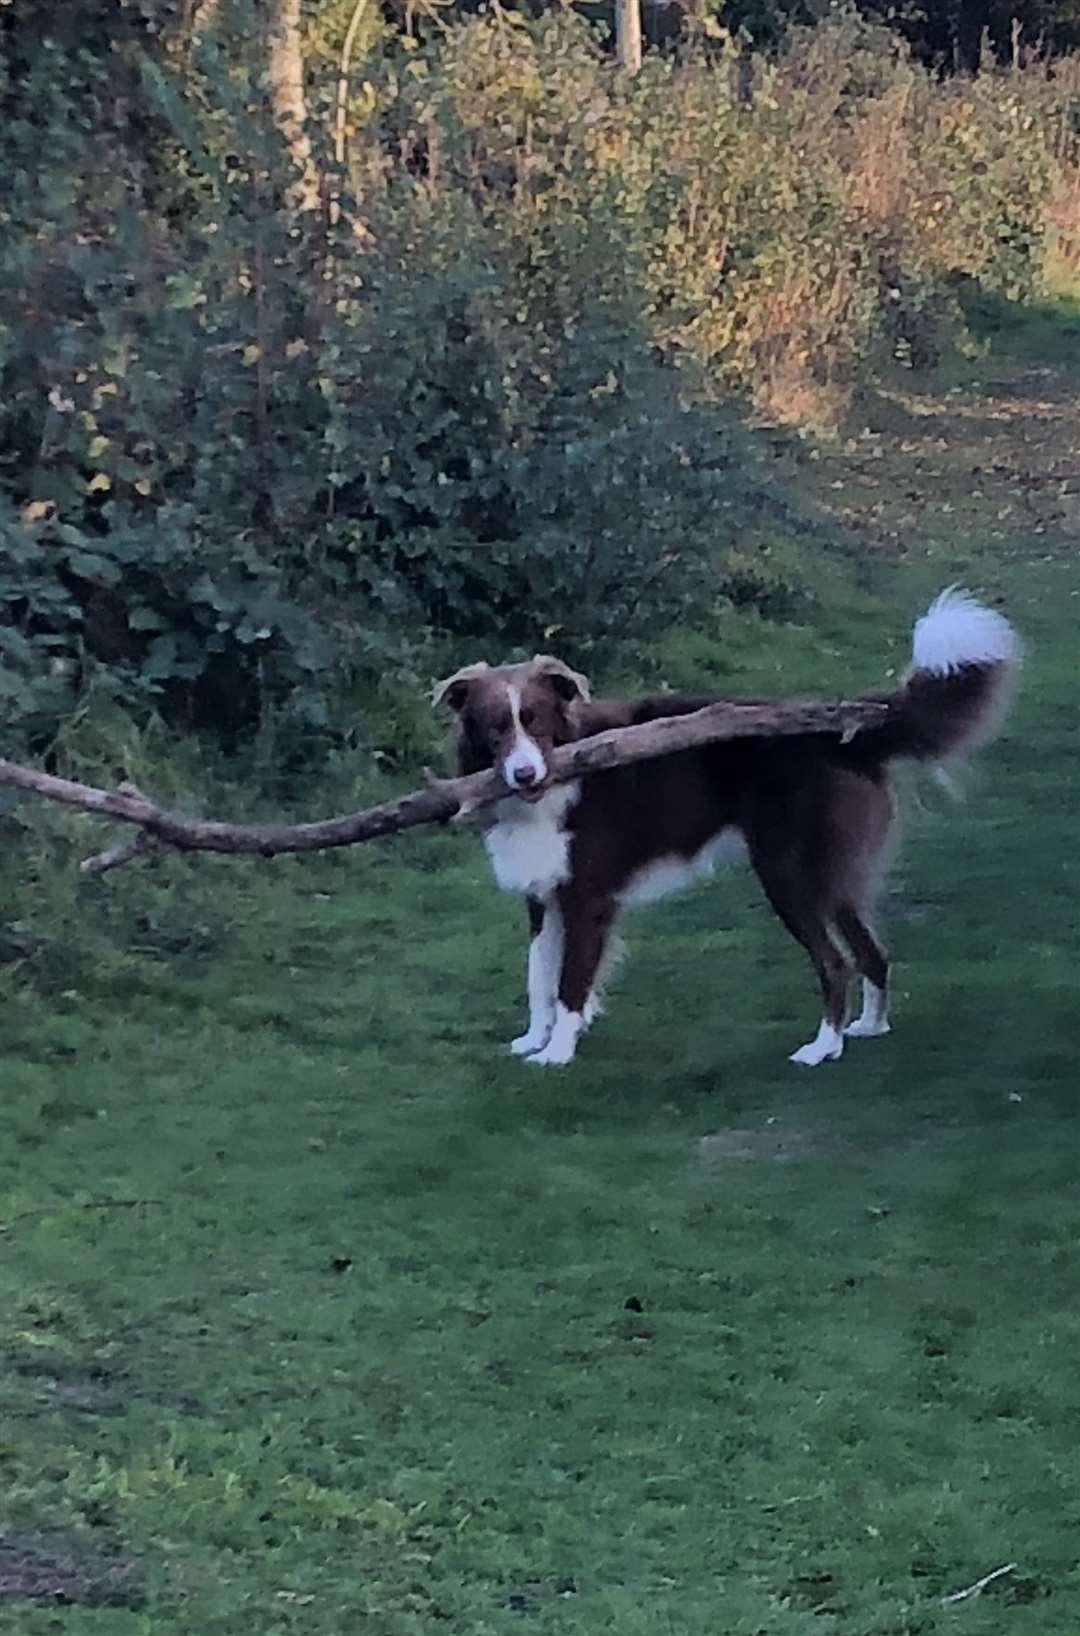 Taffy loves sticks